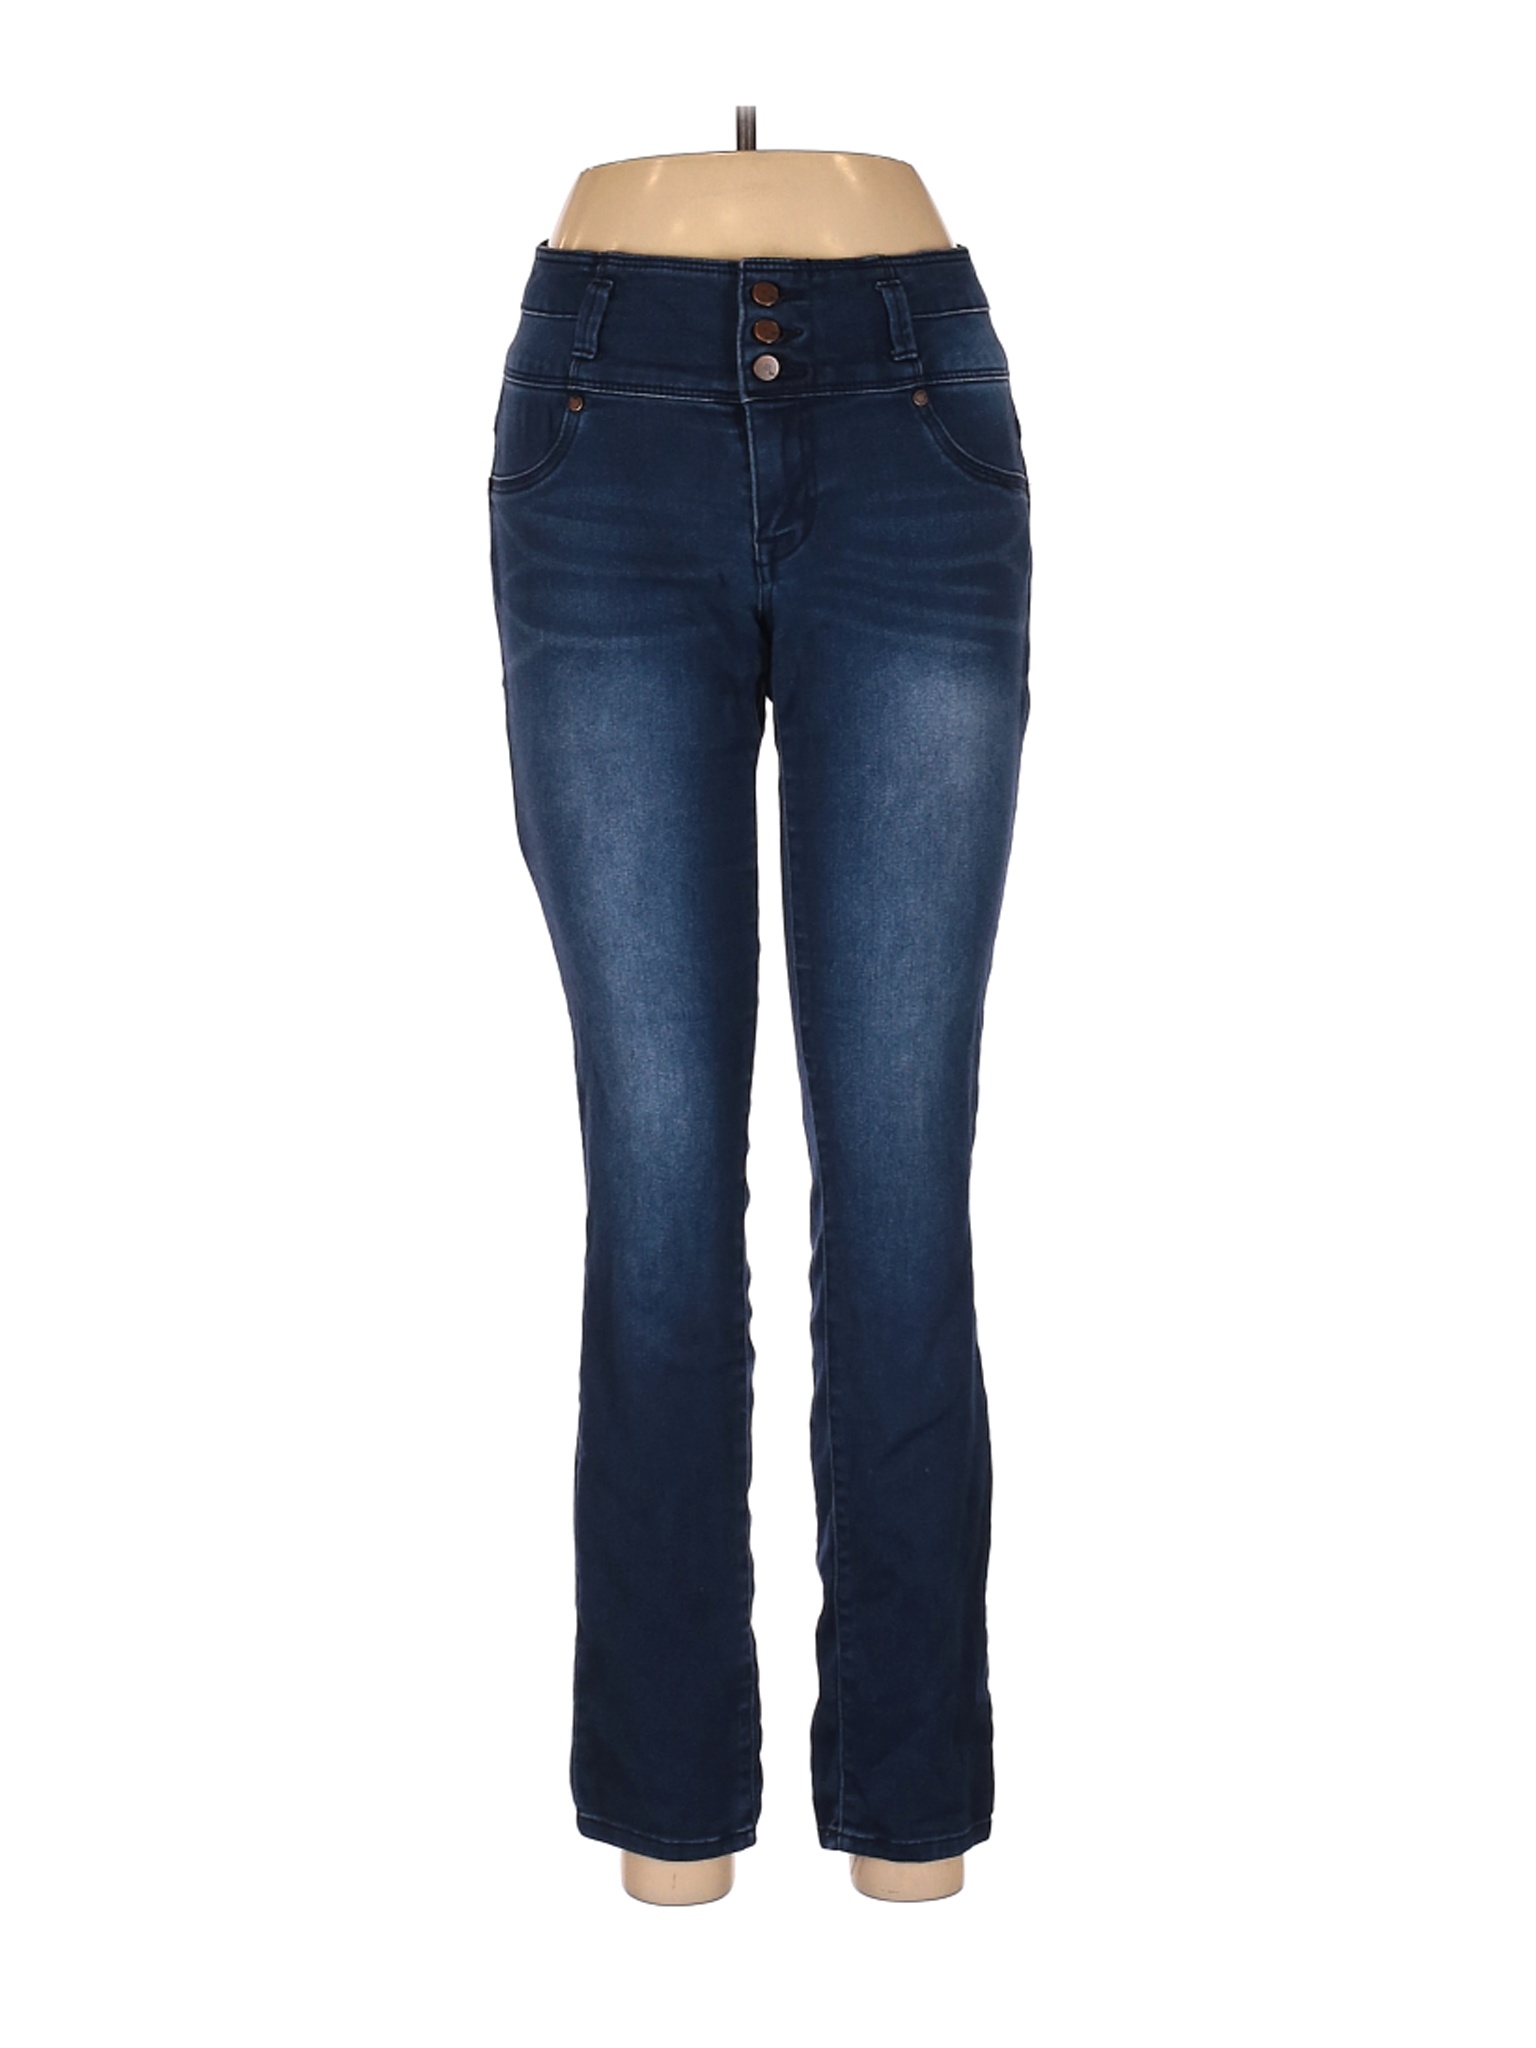 1822 Denim Women Blue Jeans 6 | eBay